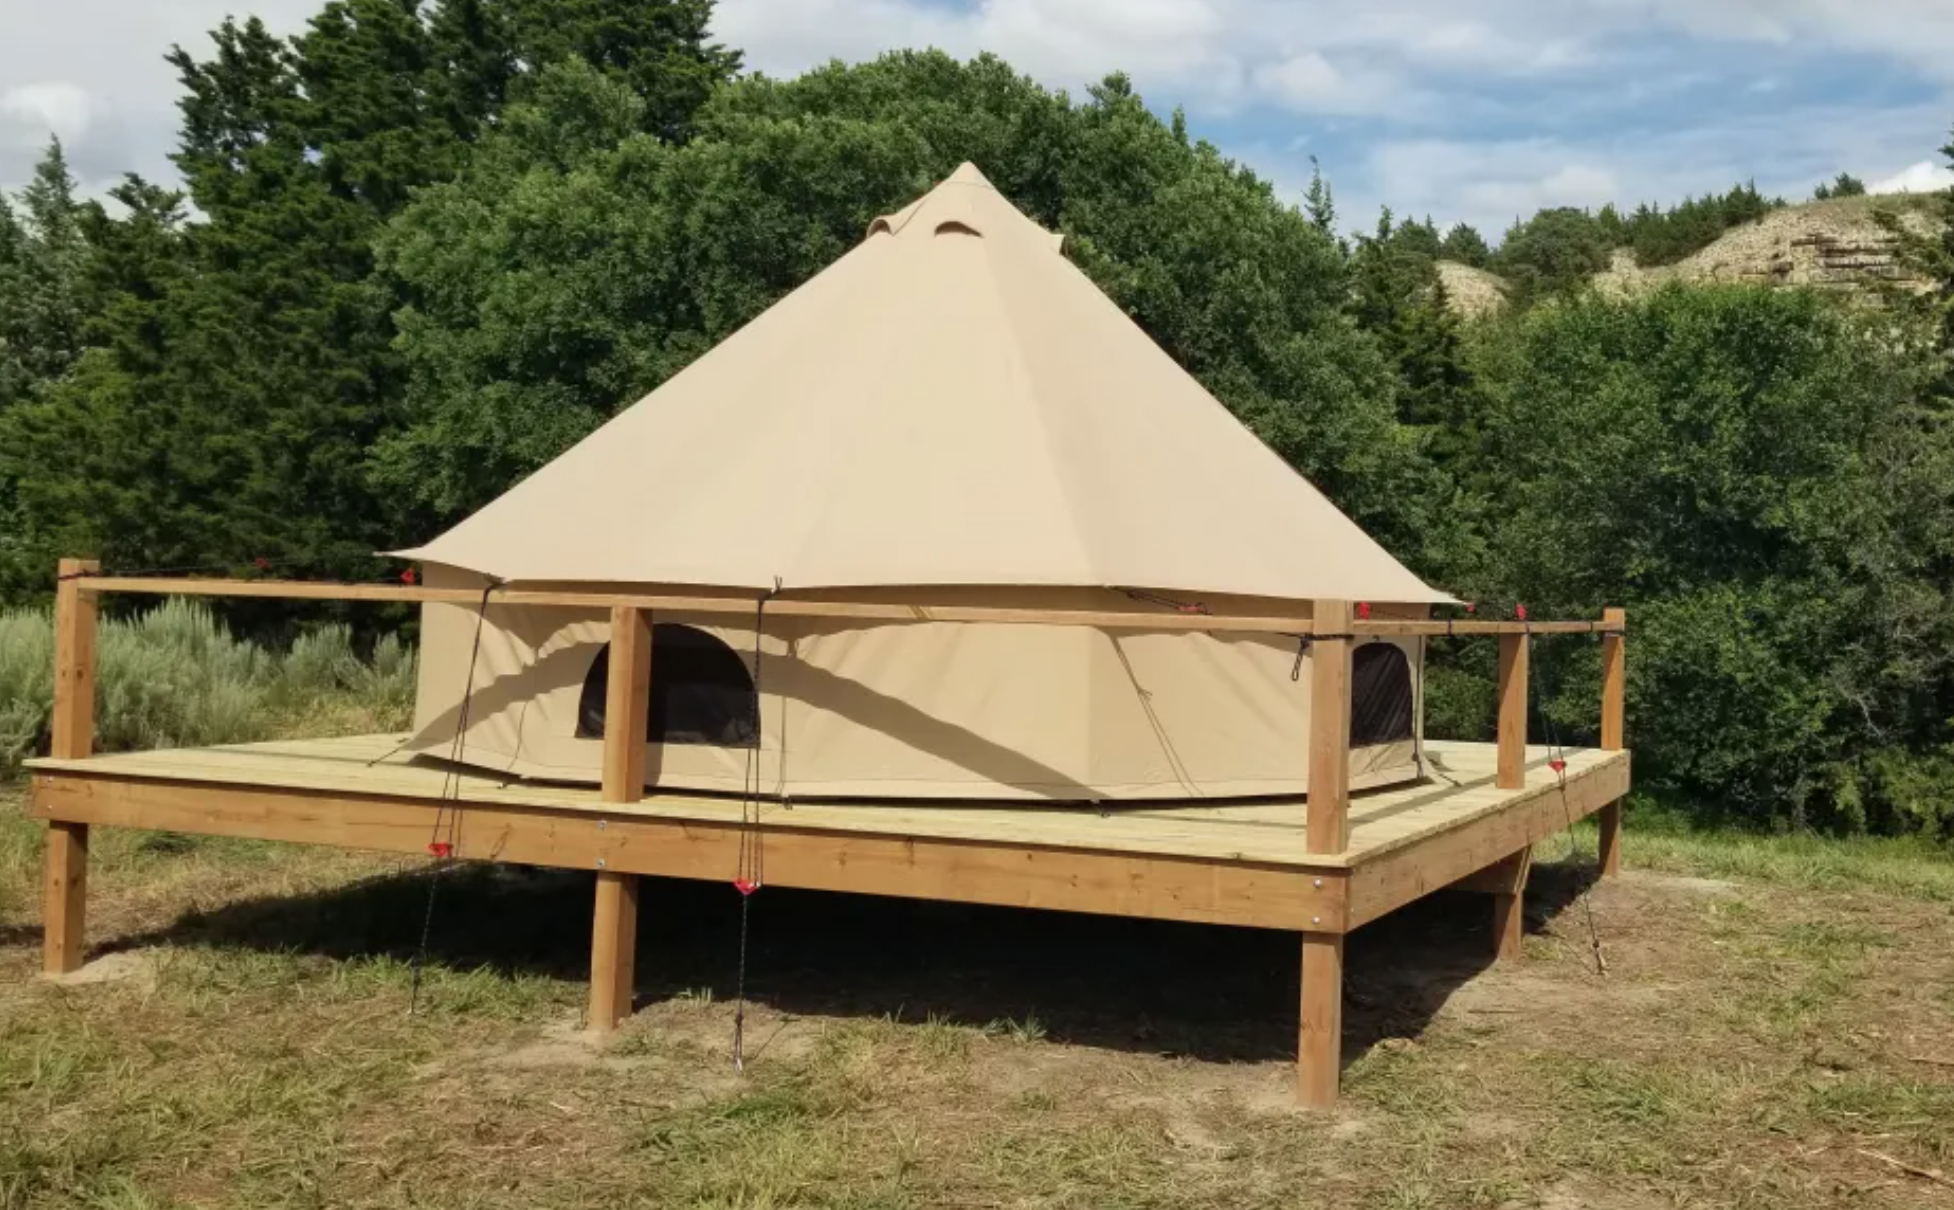 Tent glamping in Kansas